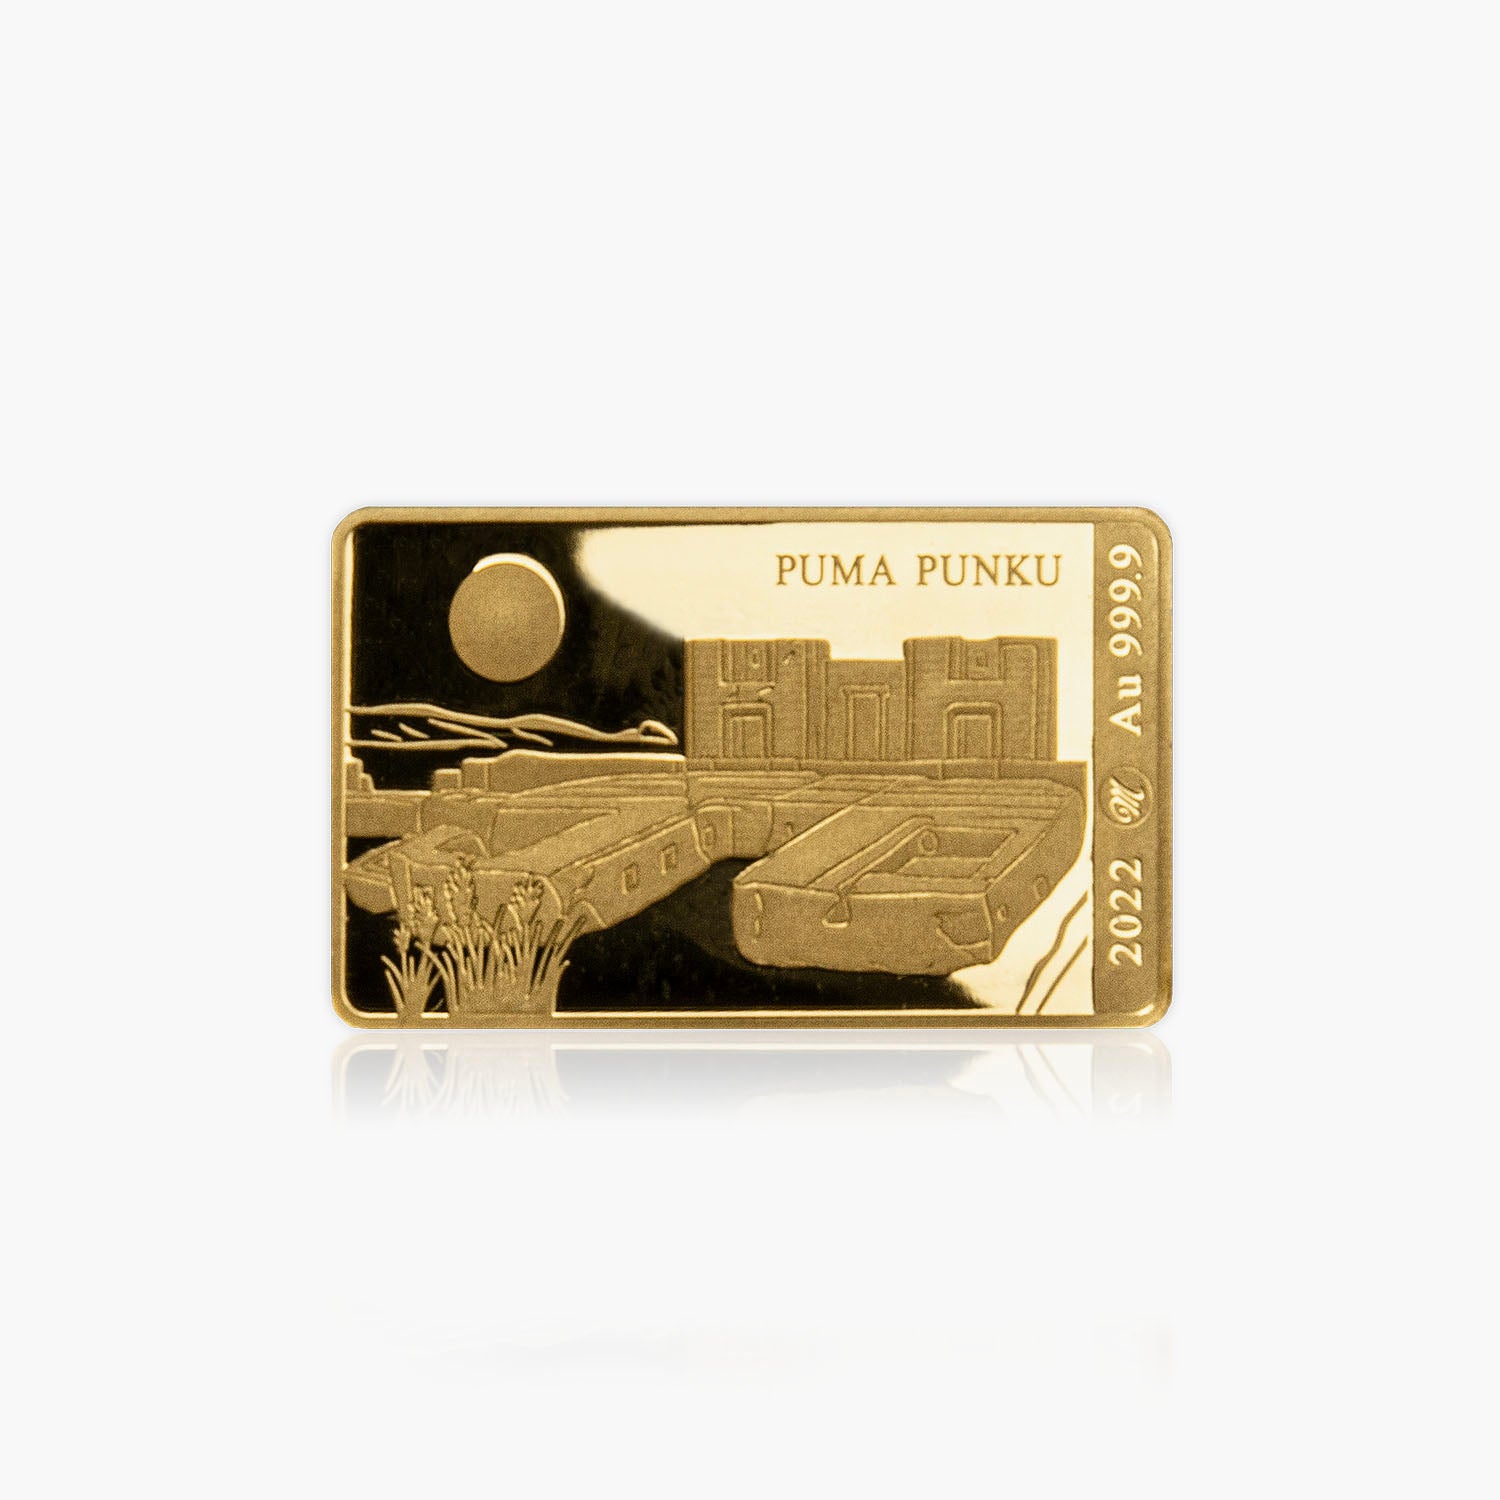 Puma Punku Gold Bar